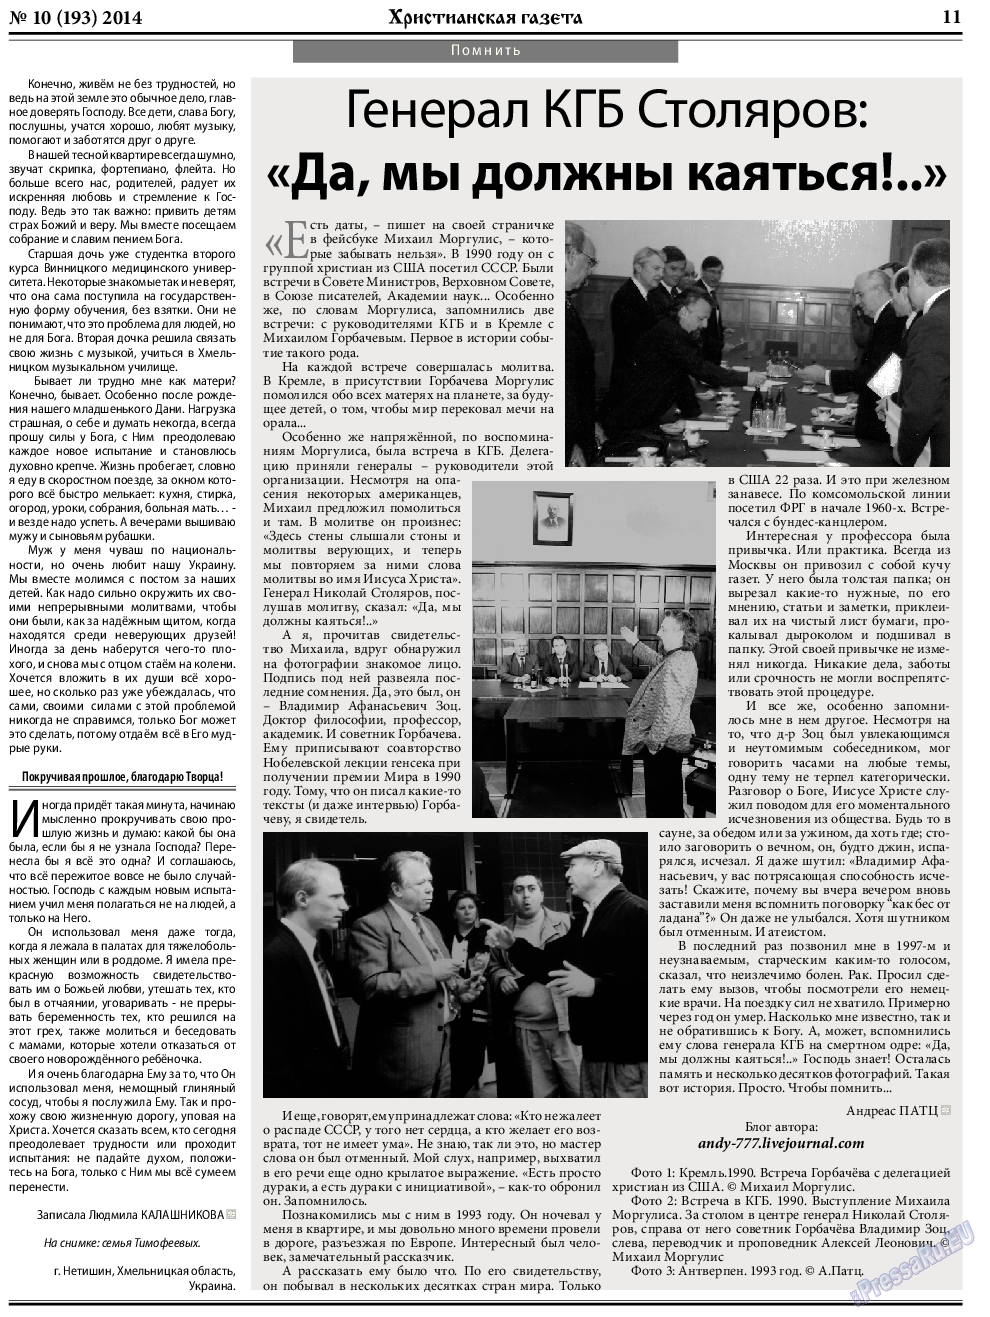 Христианская газета, газета. 2014 №10 стр.11